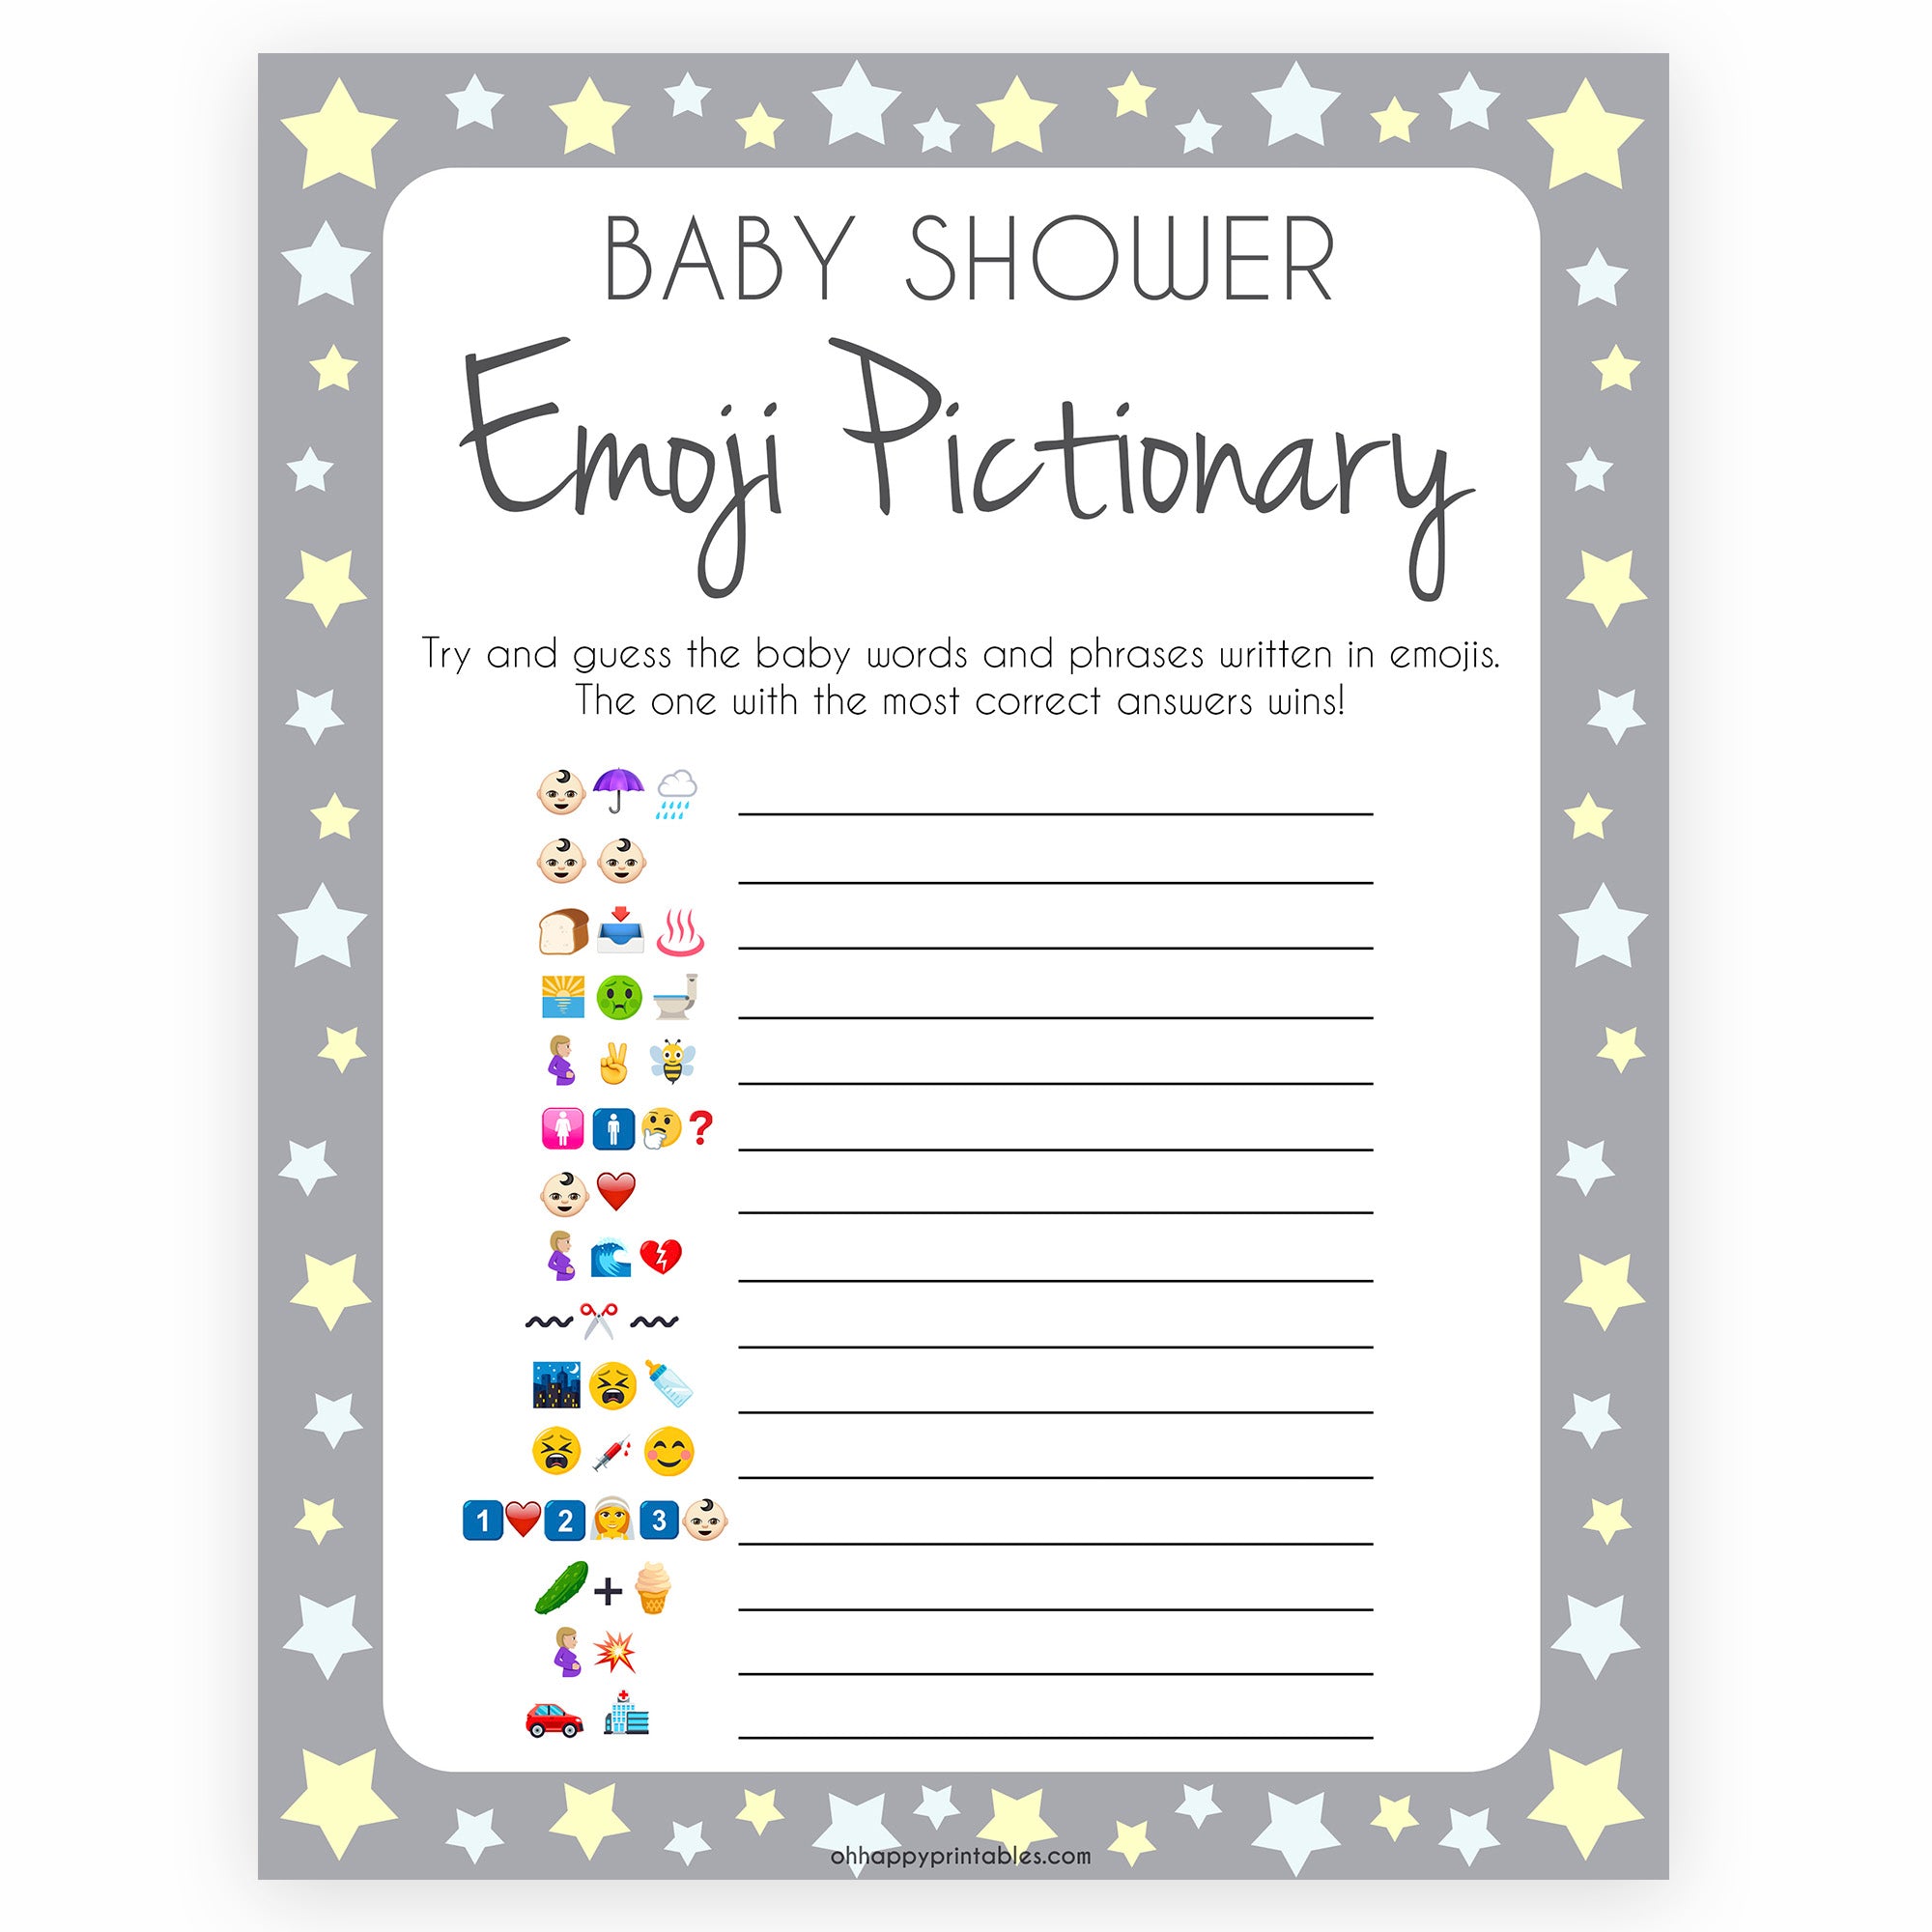 Grey Yellow Stars Emoji Pictionary Baby Shower Games, Printable Baby Shower Games, Emoji Pictionary, Stars Baby Shower Games. Emoji Game, fun abby shower games, popular baby shower games